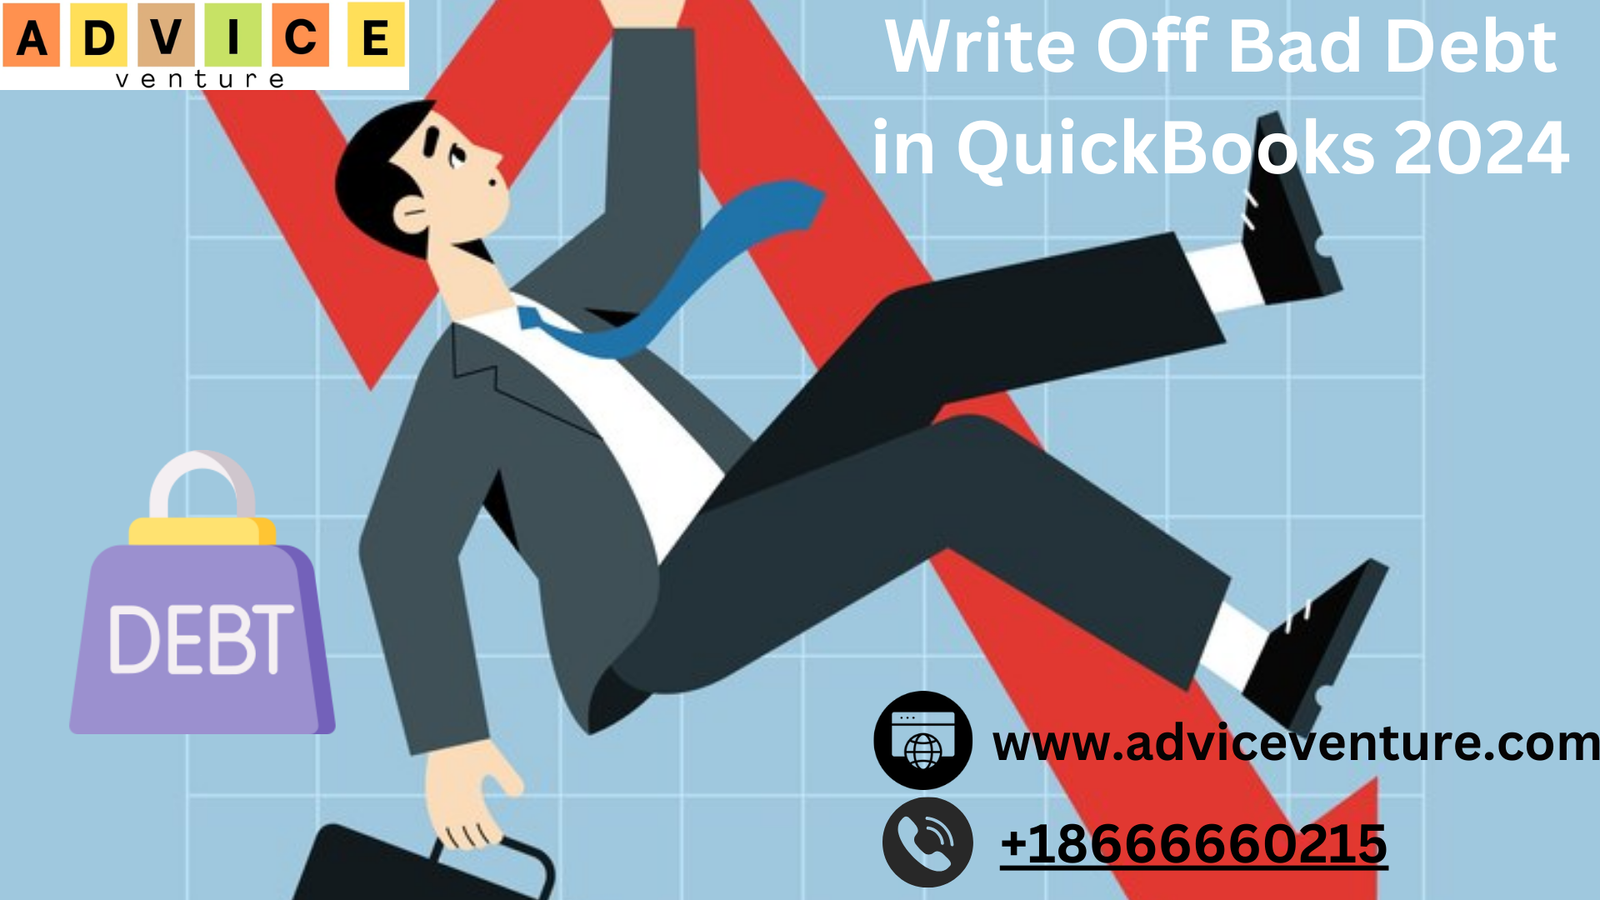 Write Off Bad Debt in QuickBooks 2024